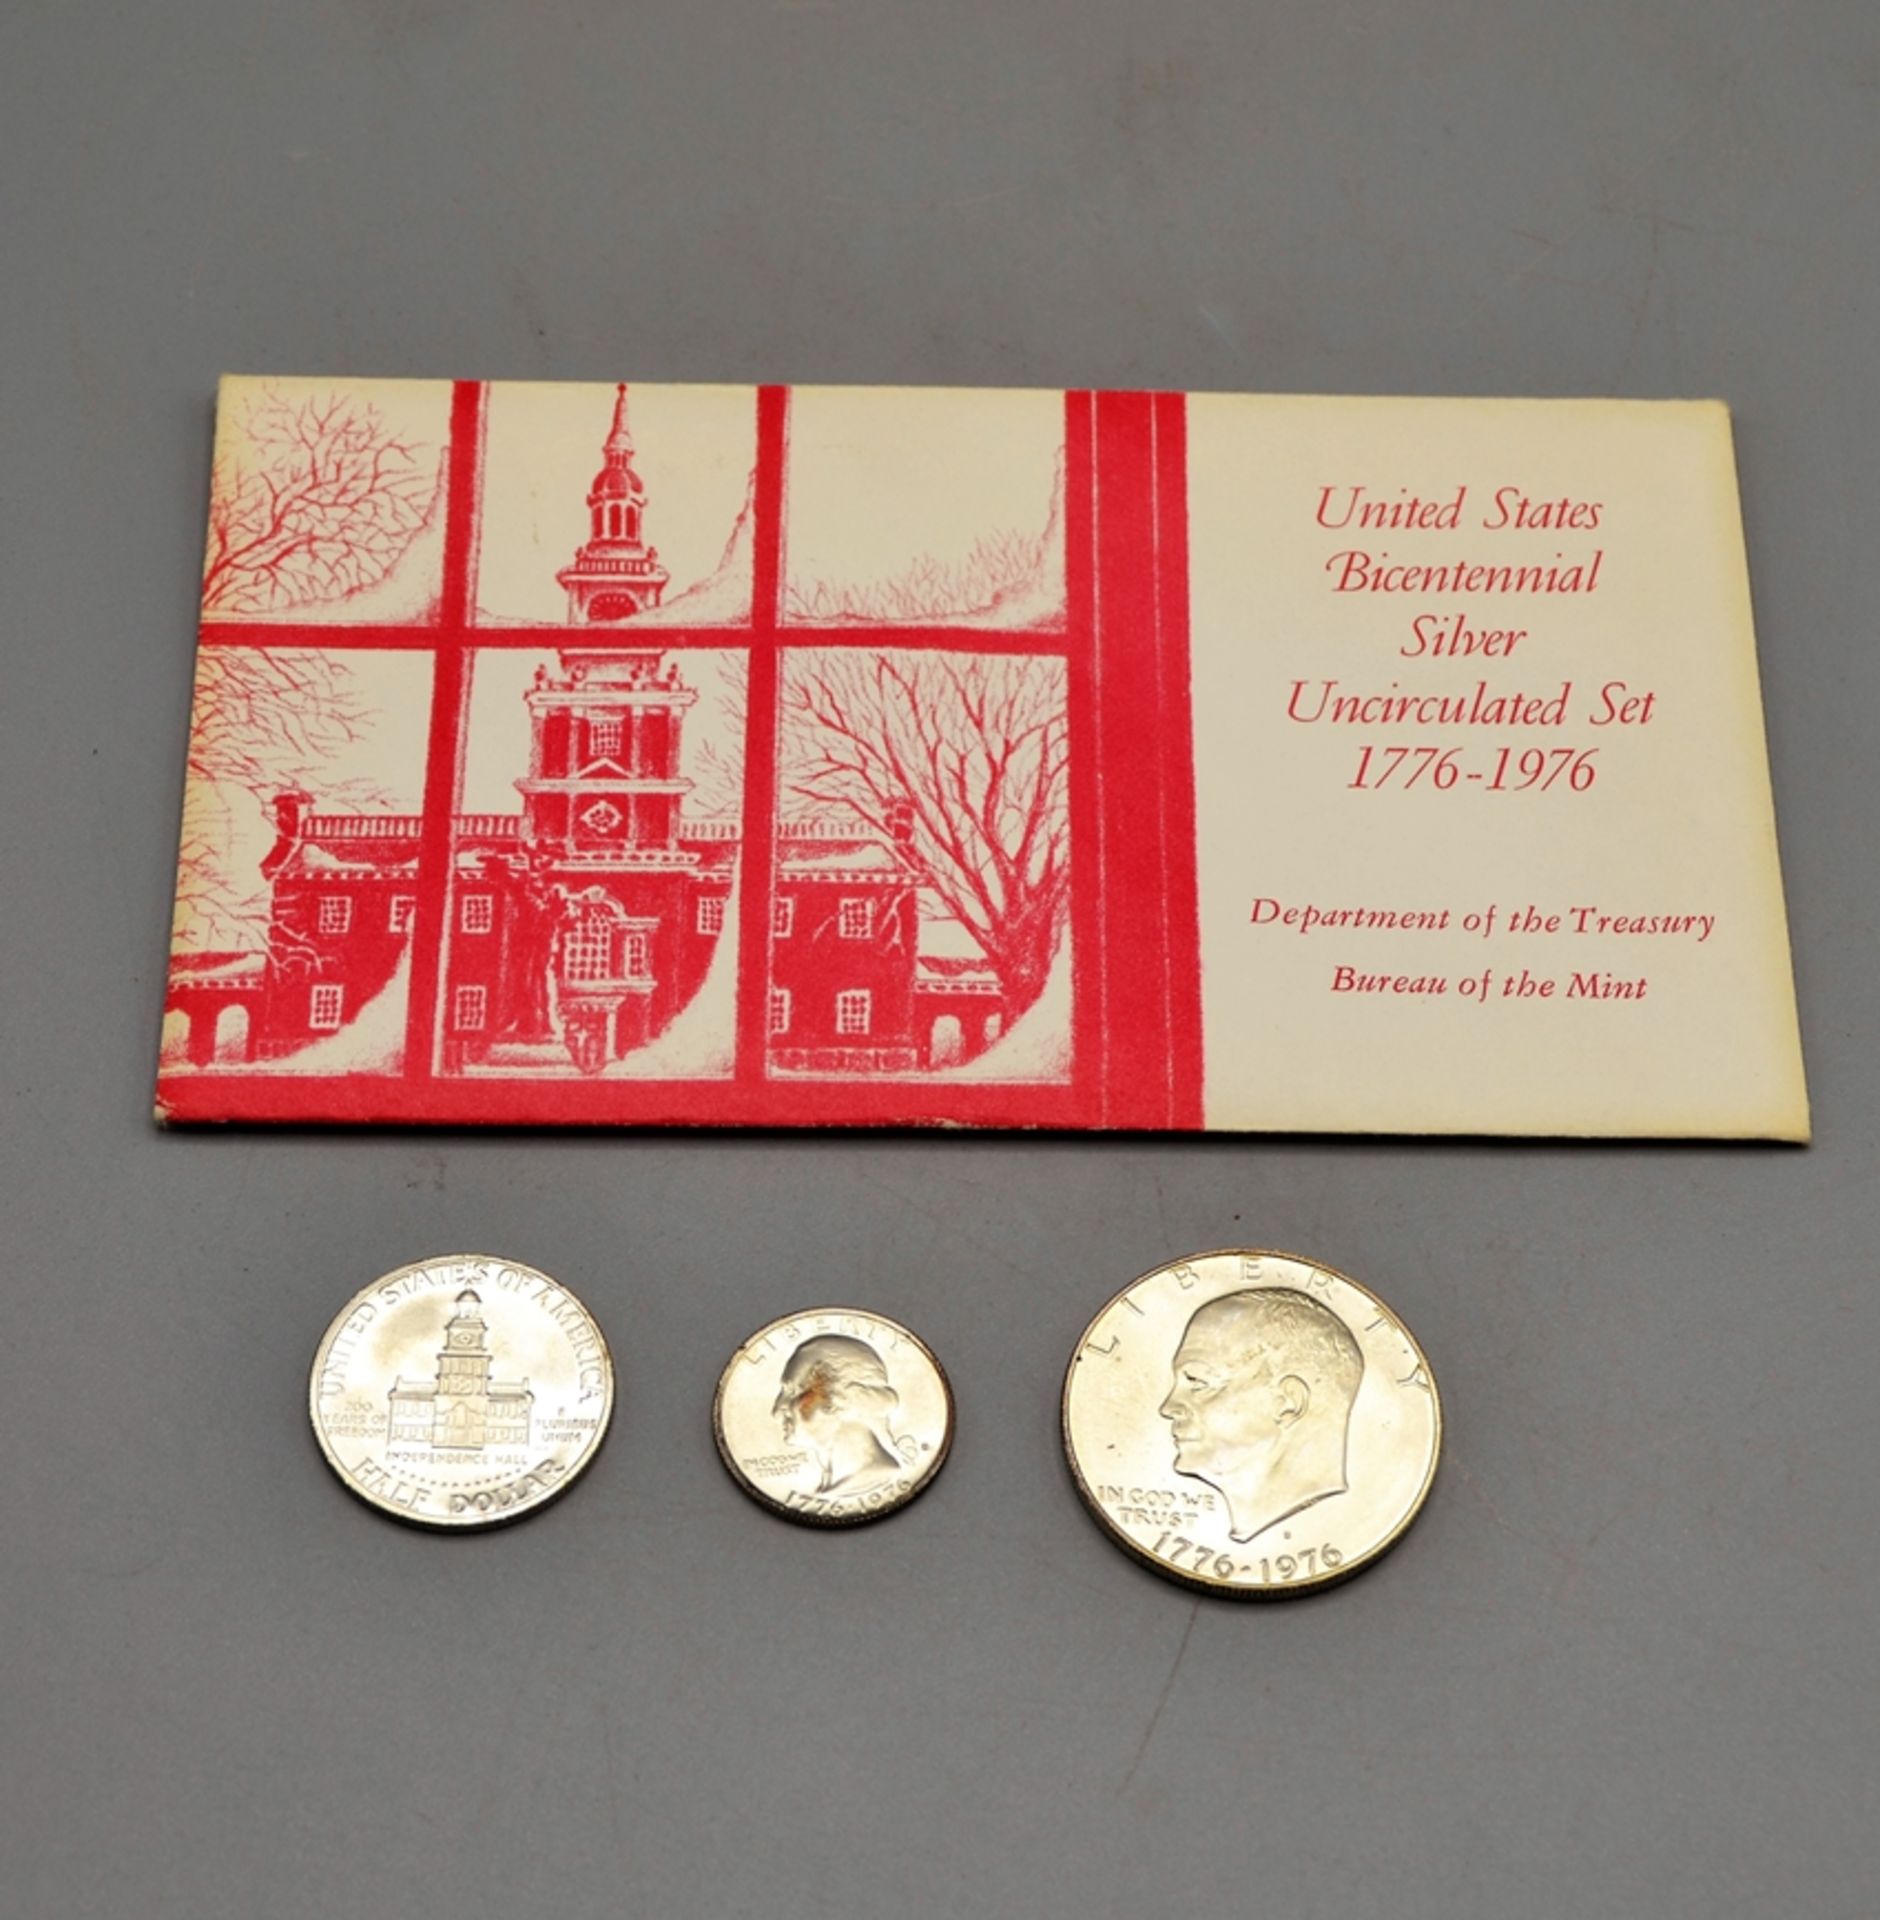 United States Bicentennial Silver Uncirculated Set 1776-1976, darunter 1 Dollar 1976 S Eisenhower, 